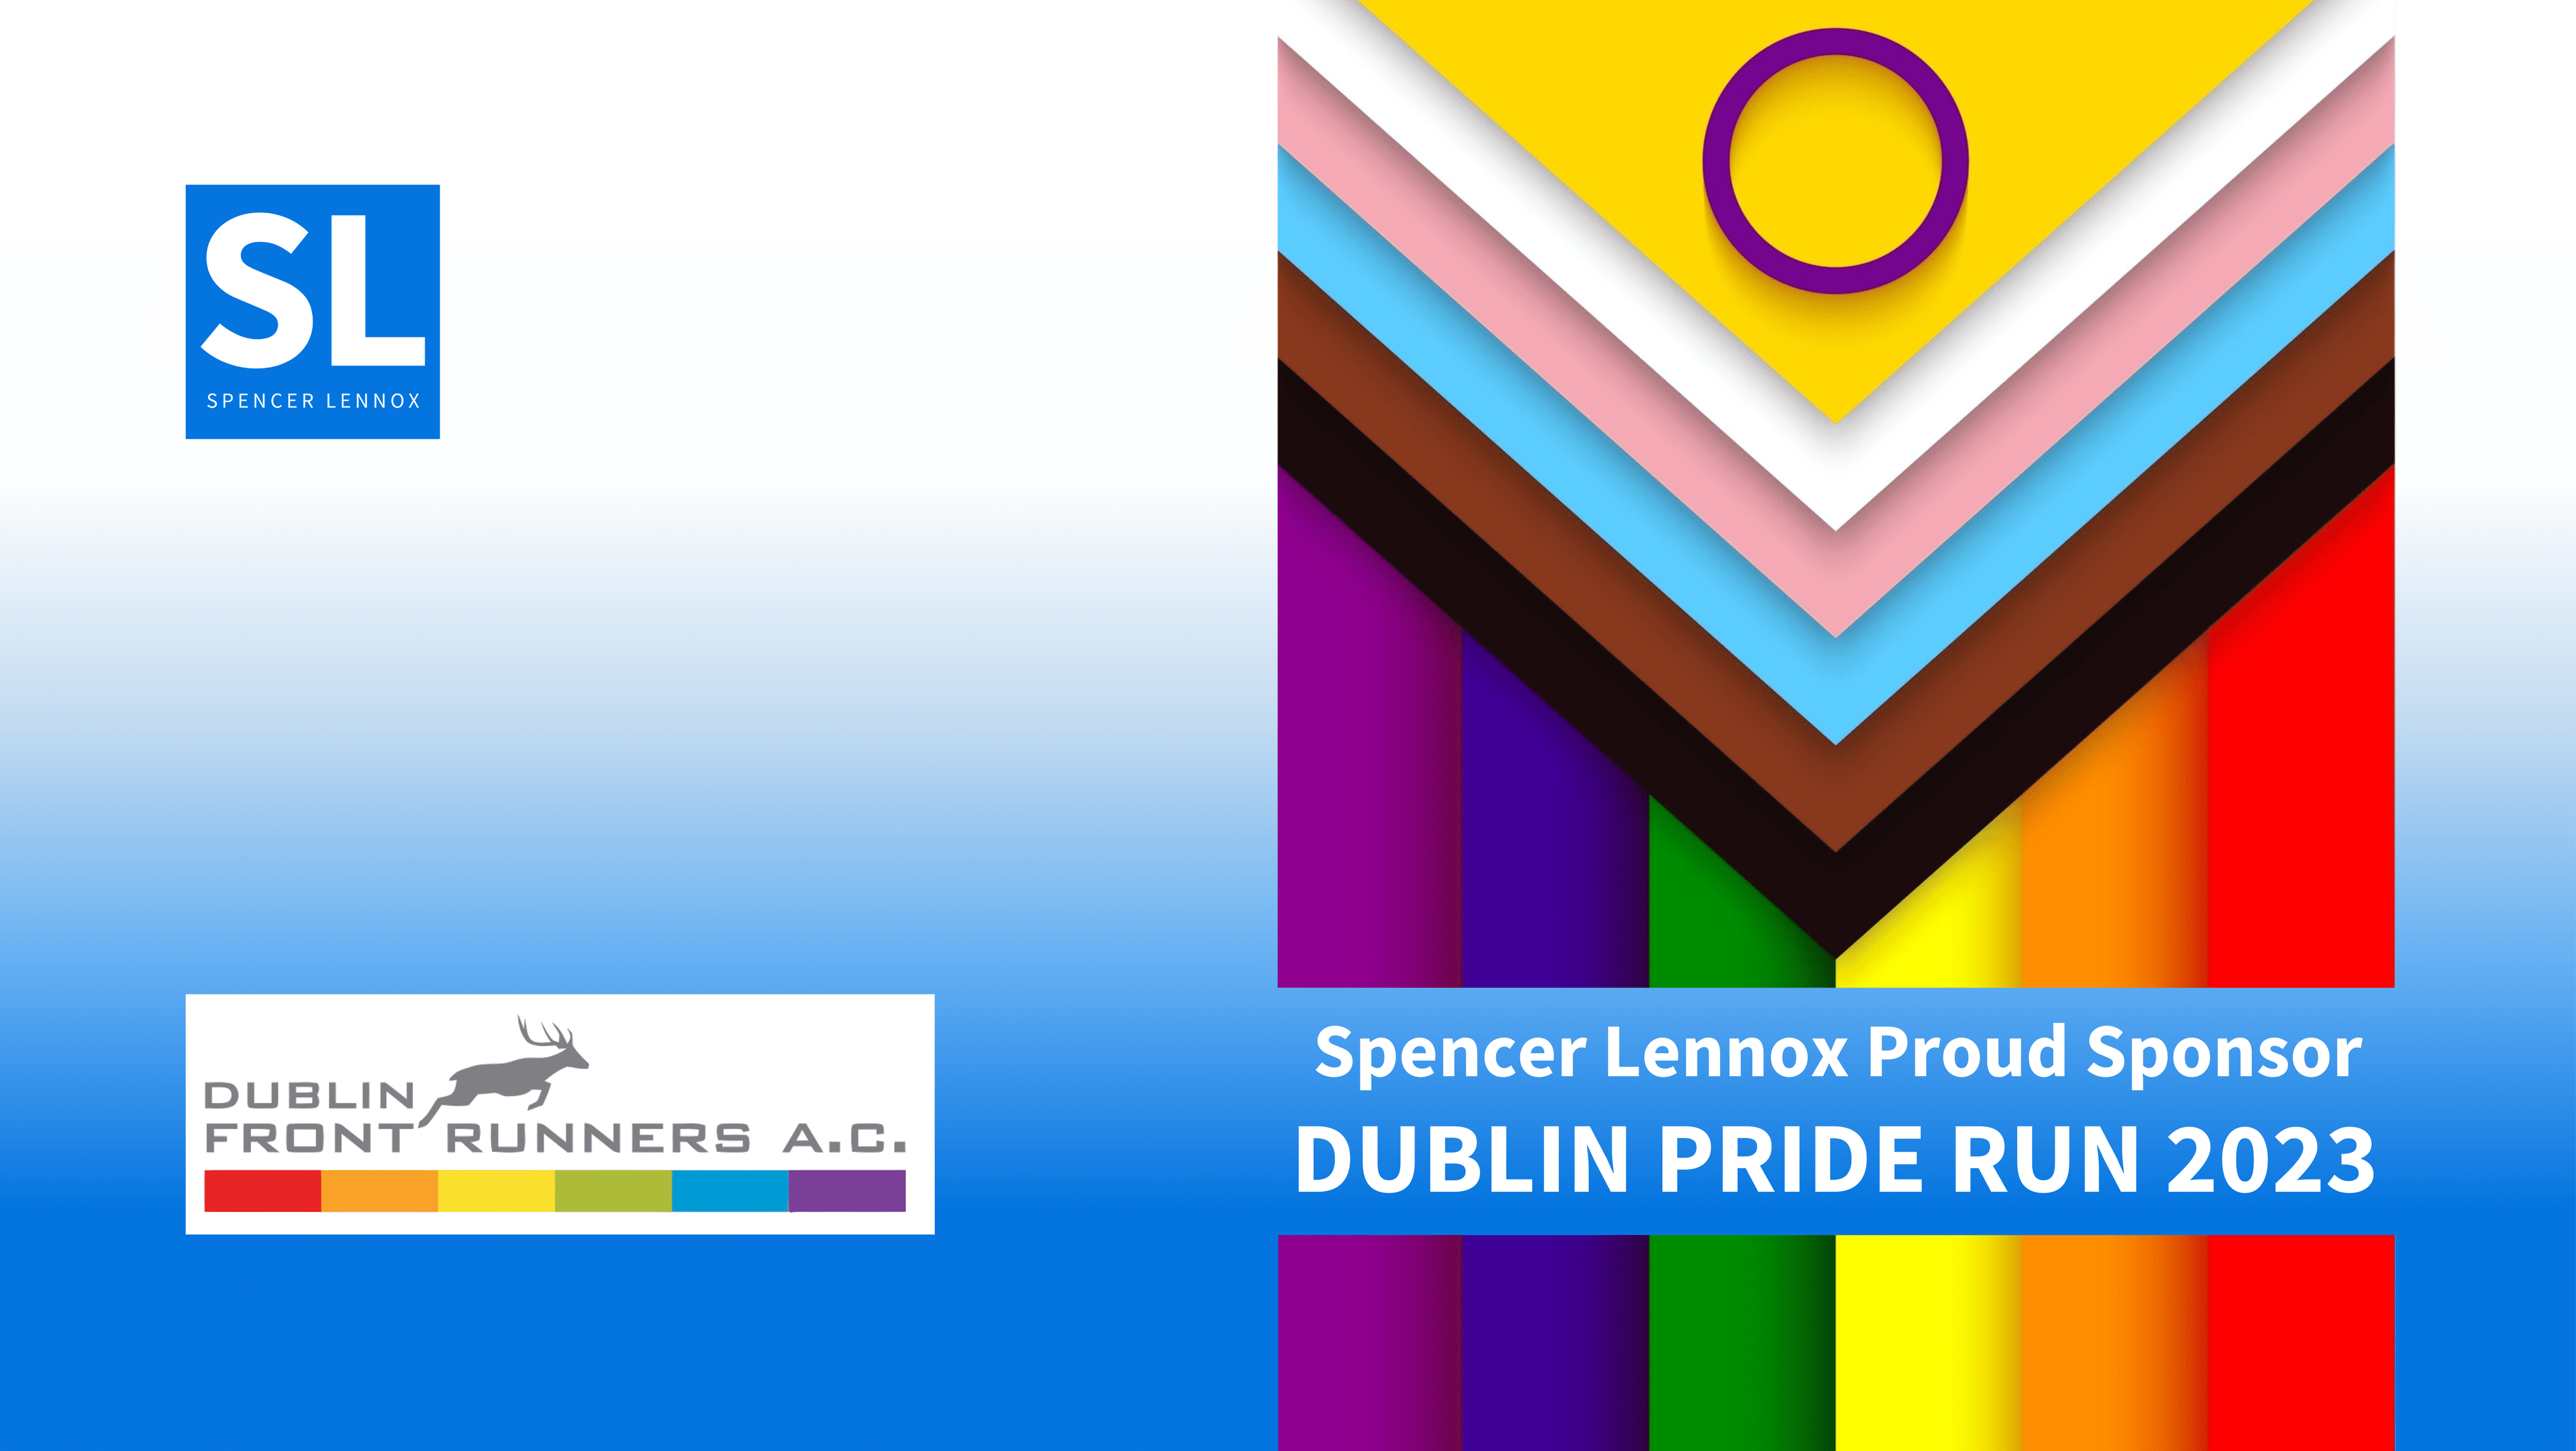 Spencer Lennox is proud sponsor of the Dublin Pride Run 2023